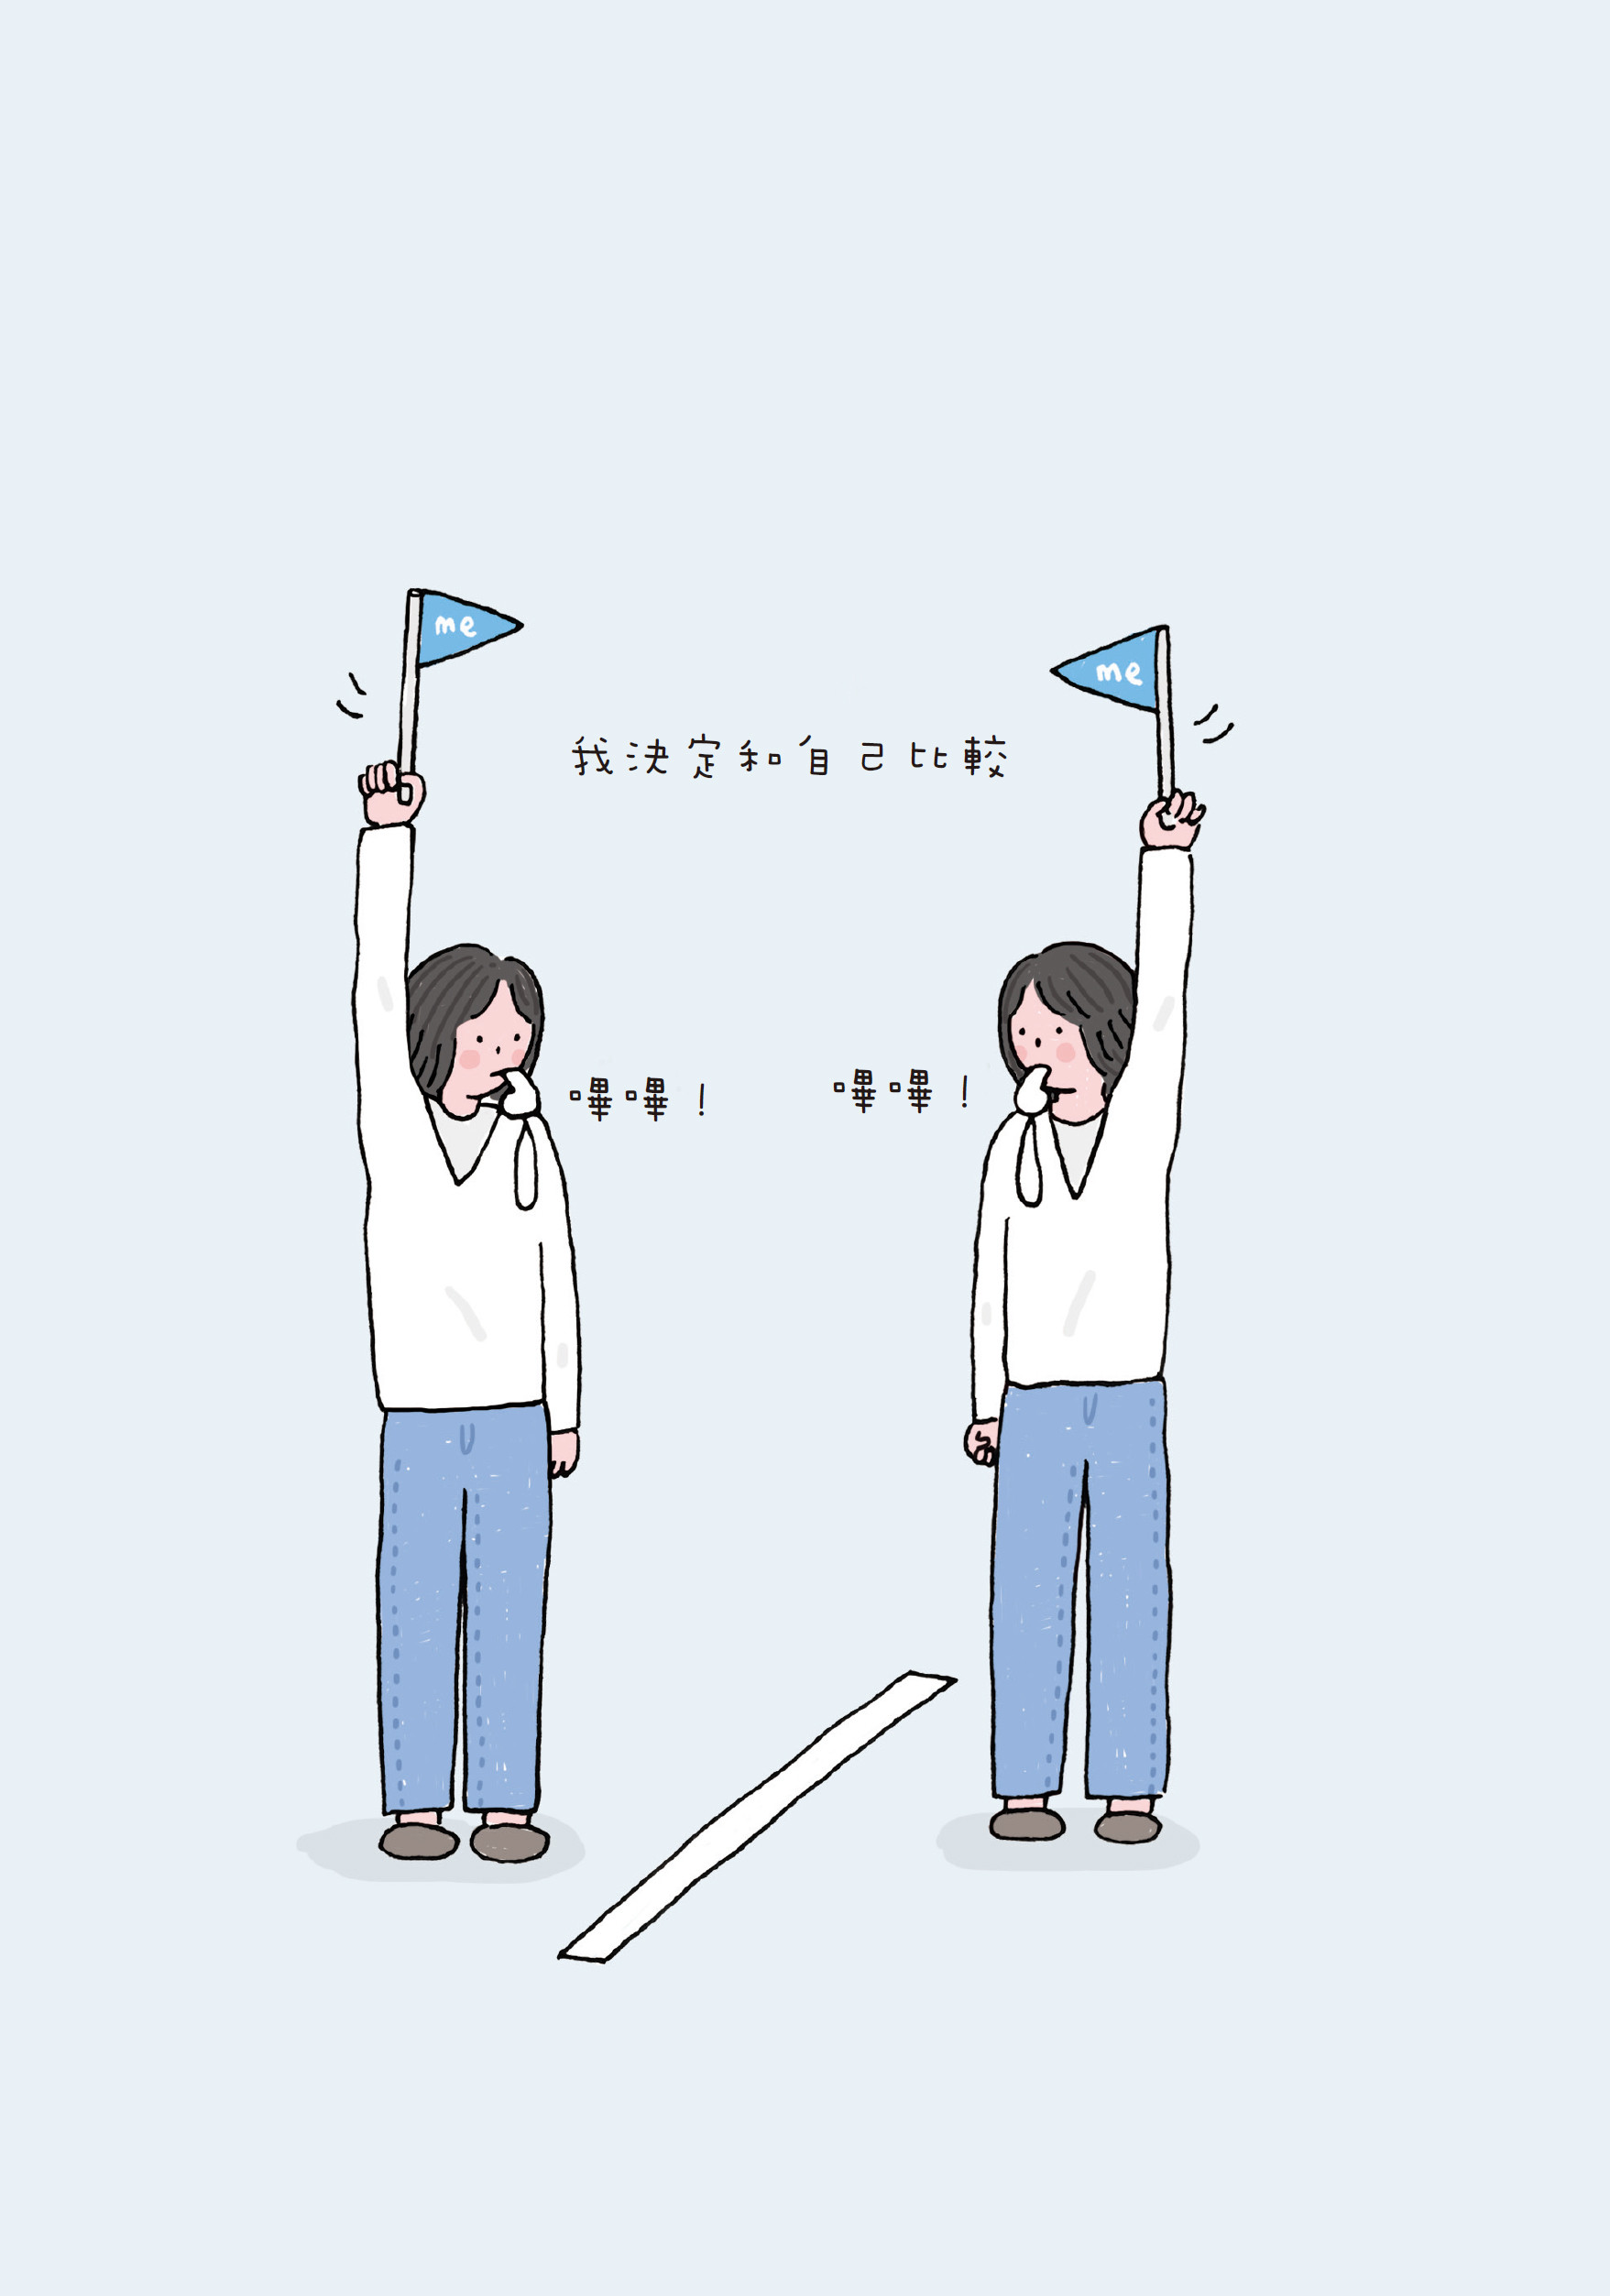 韩国暖心插画触动370万人：「比起成为合格的大人，更想认同无能为力的自己」